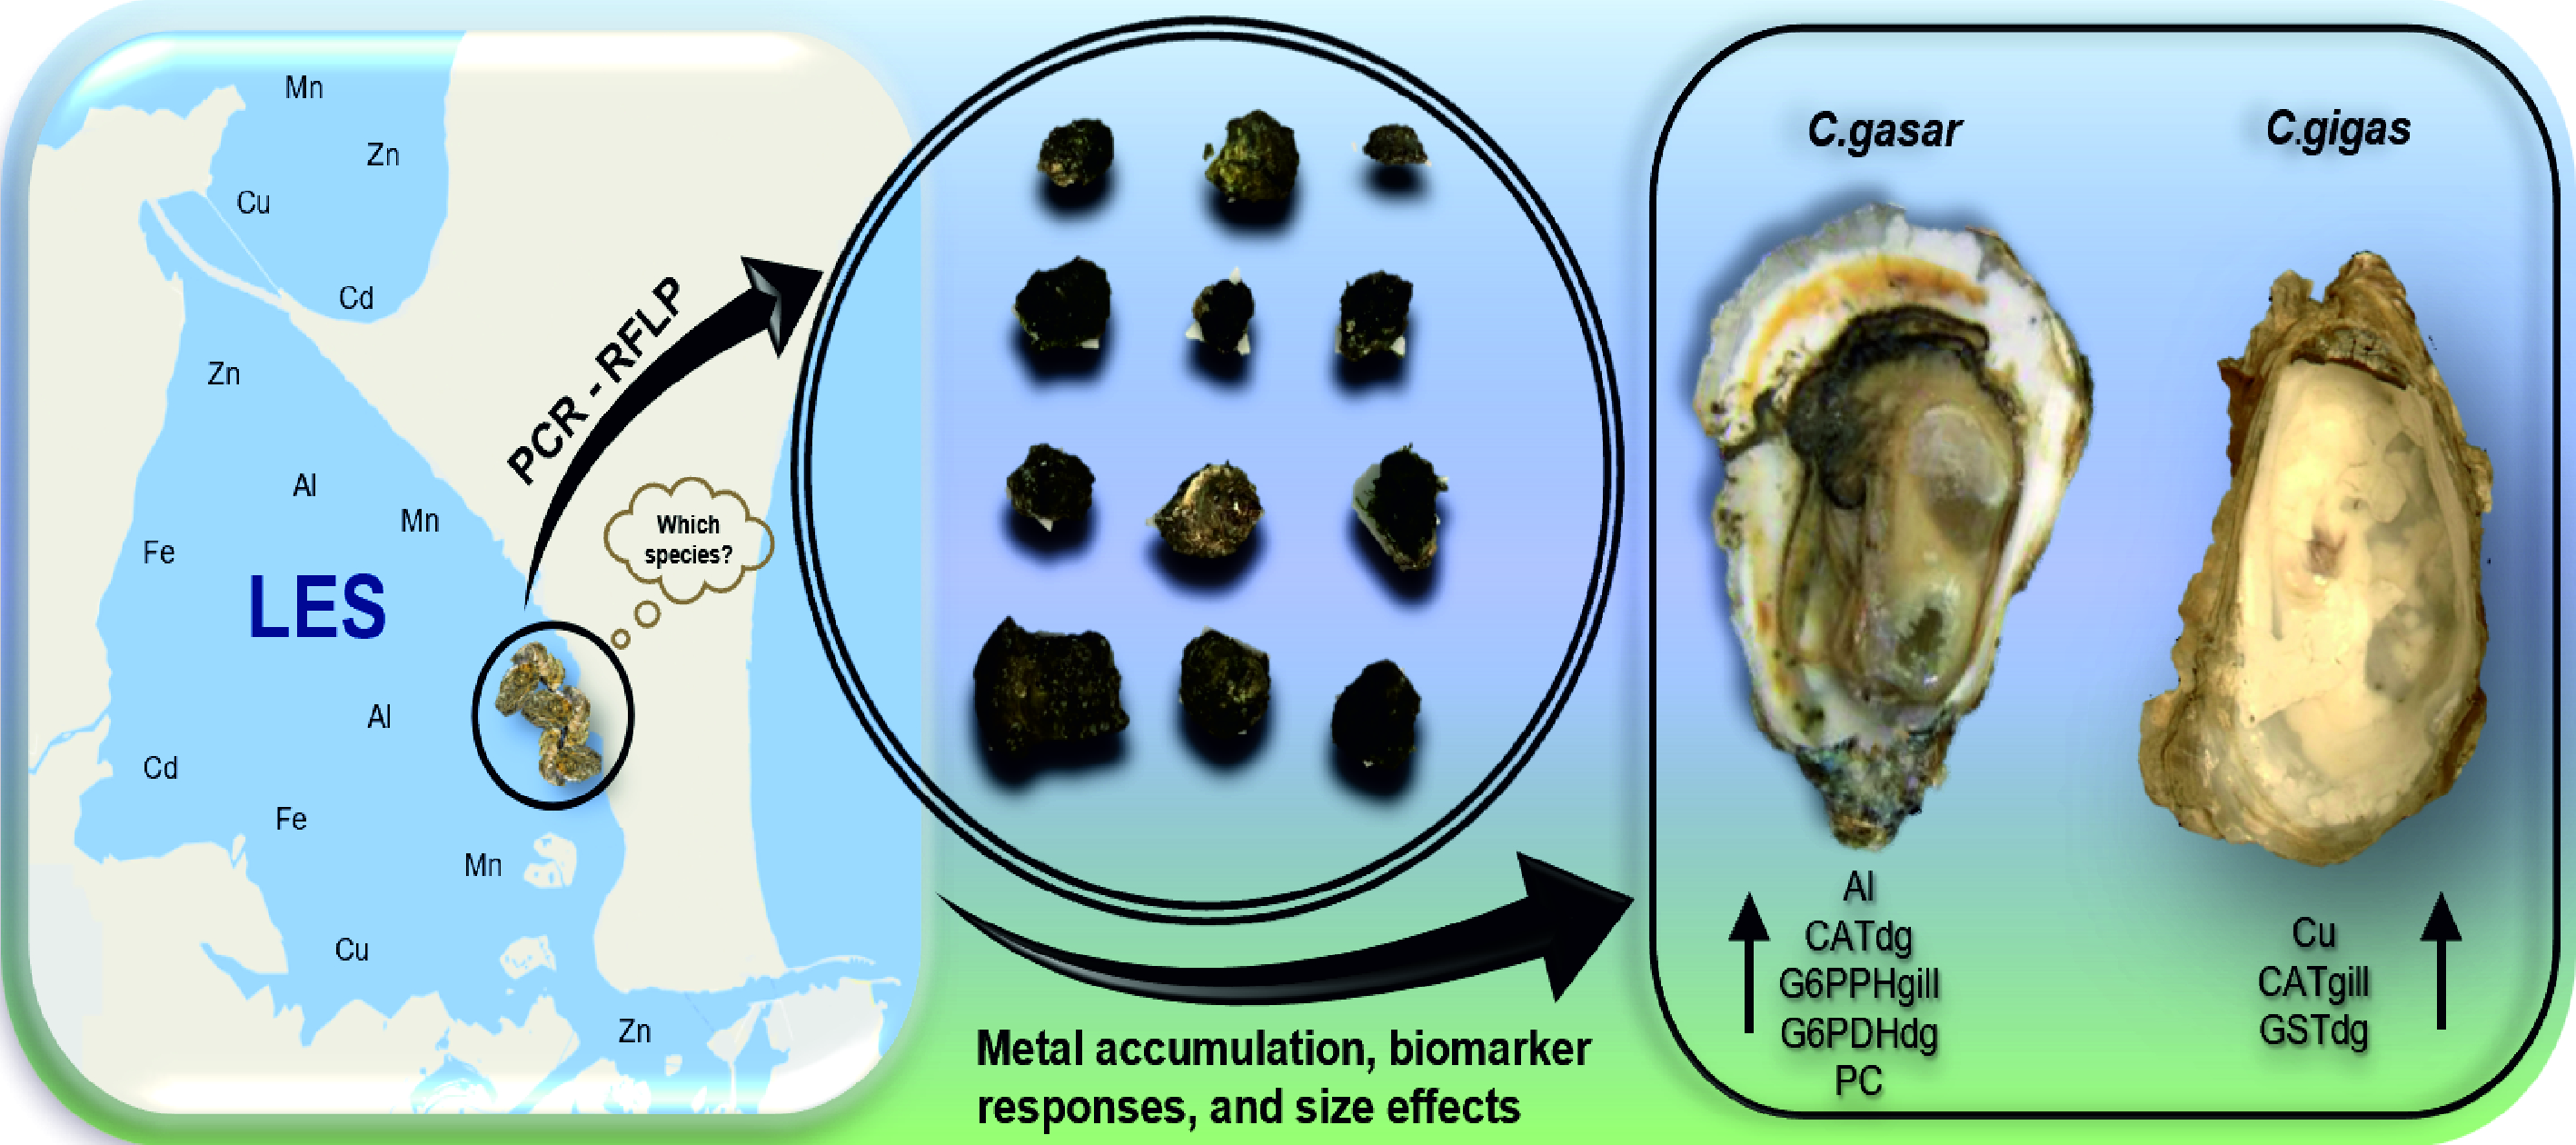 Investigadores do CIMA publicaram um artigo sobre os efeitos biológicos da contaminação crônica por metais em ostras residentes de um estuário no sul do Brasil